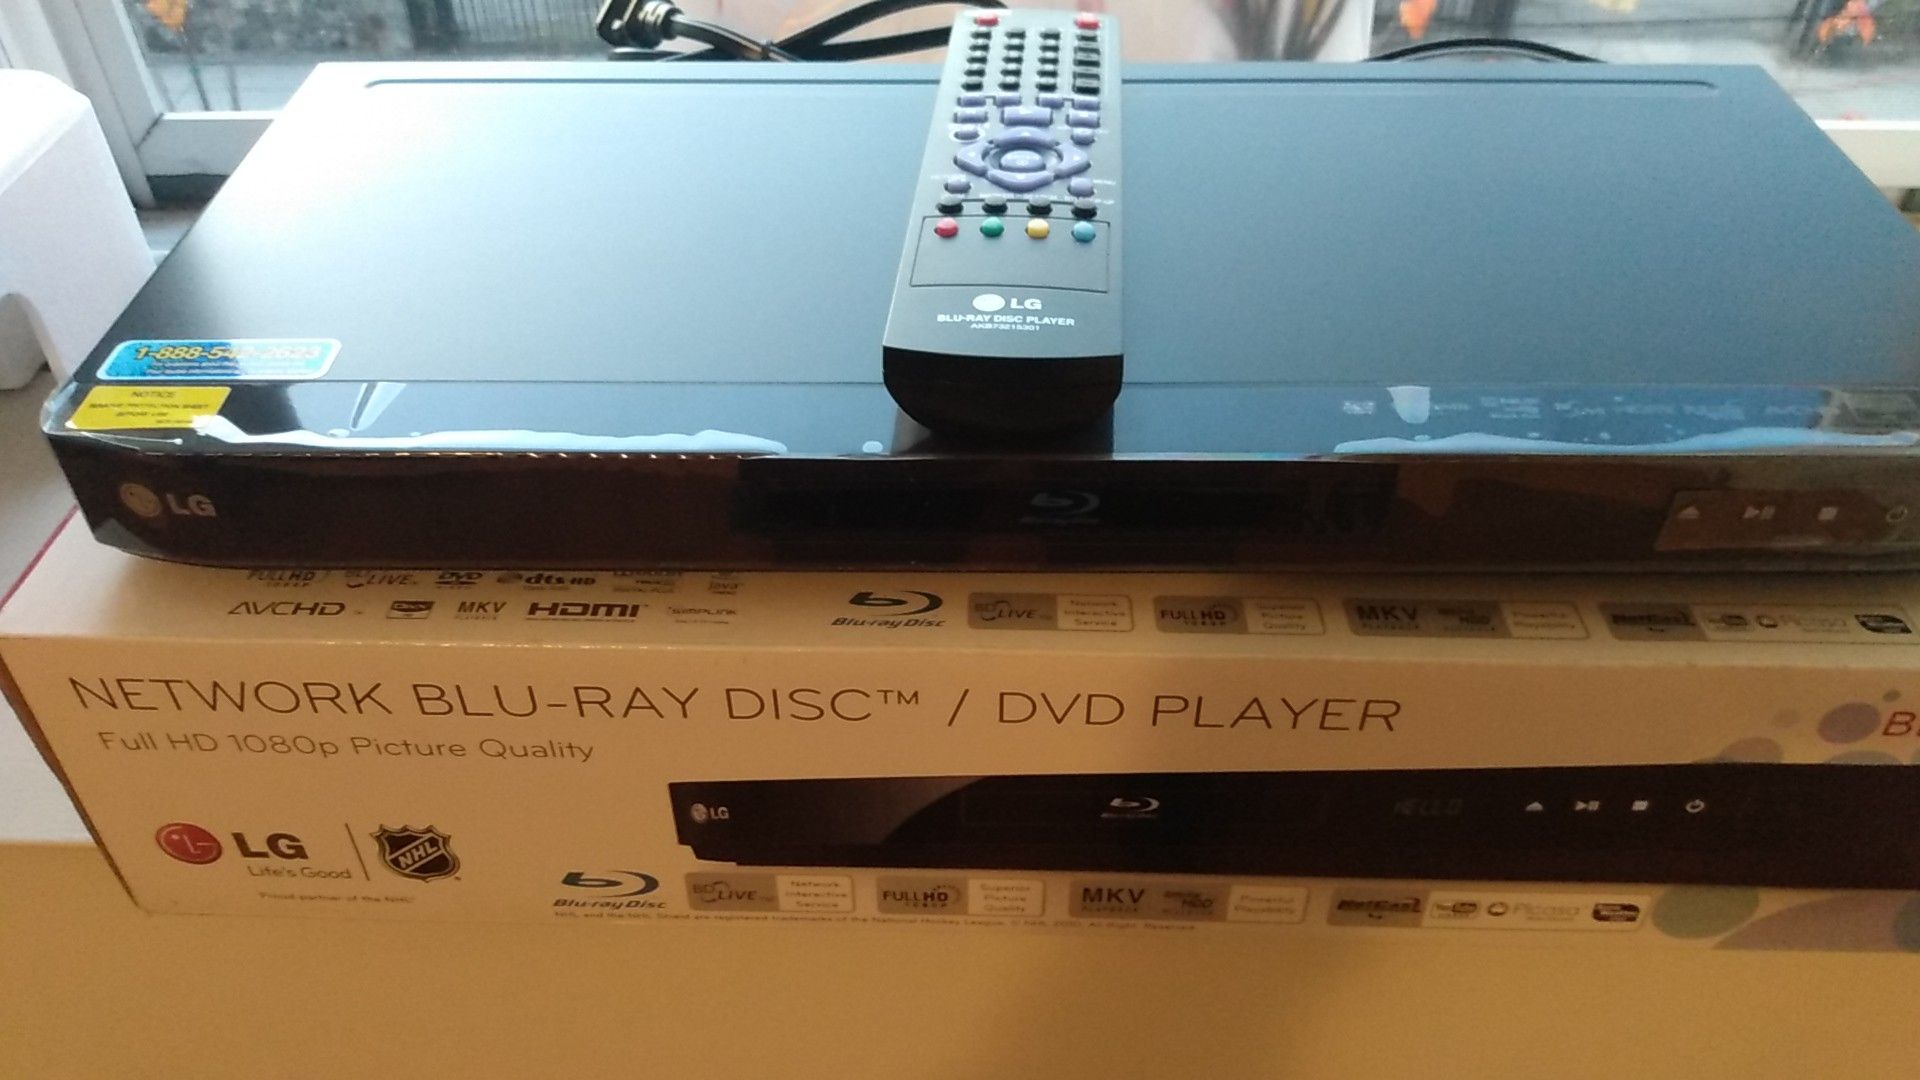 DVD PLAYER, LG NET WORK BLU-RAY DISC